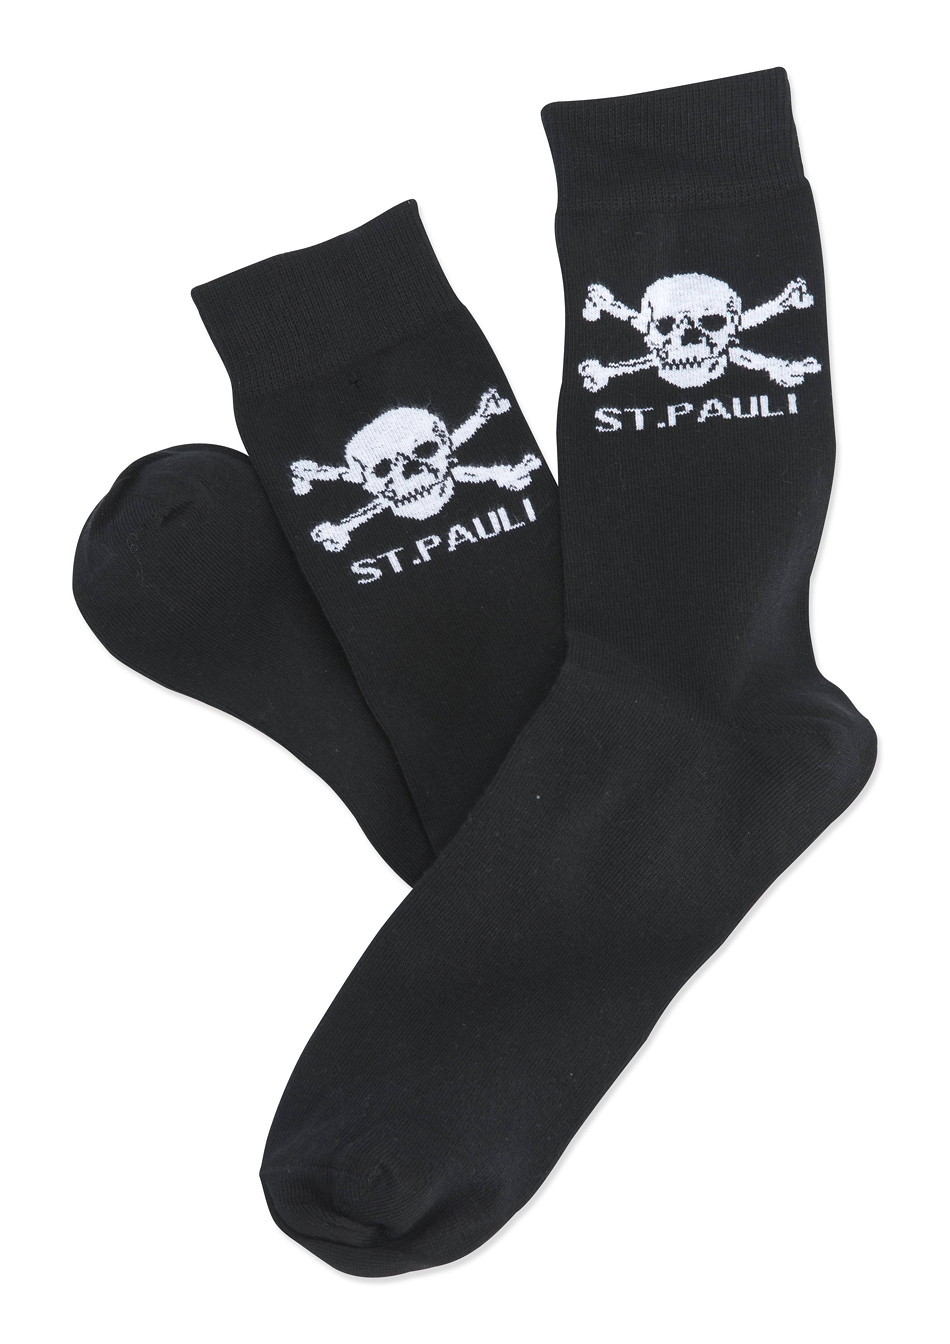 Skull and crossbones socks